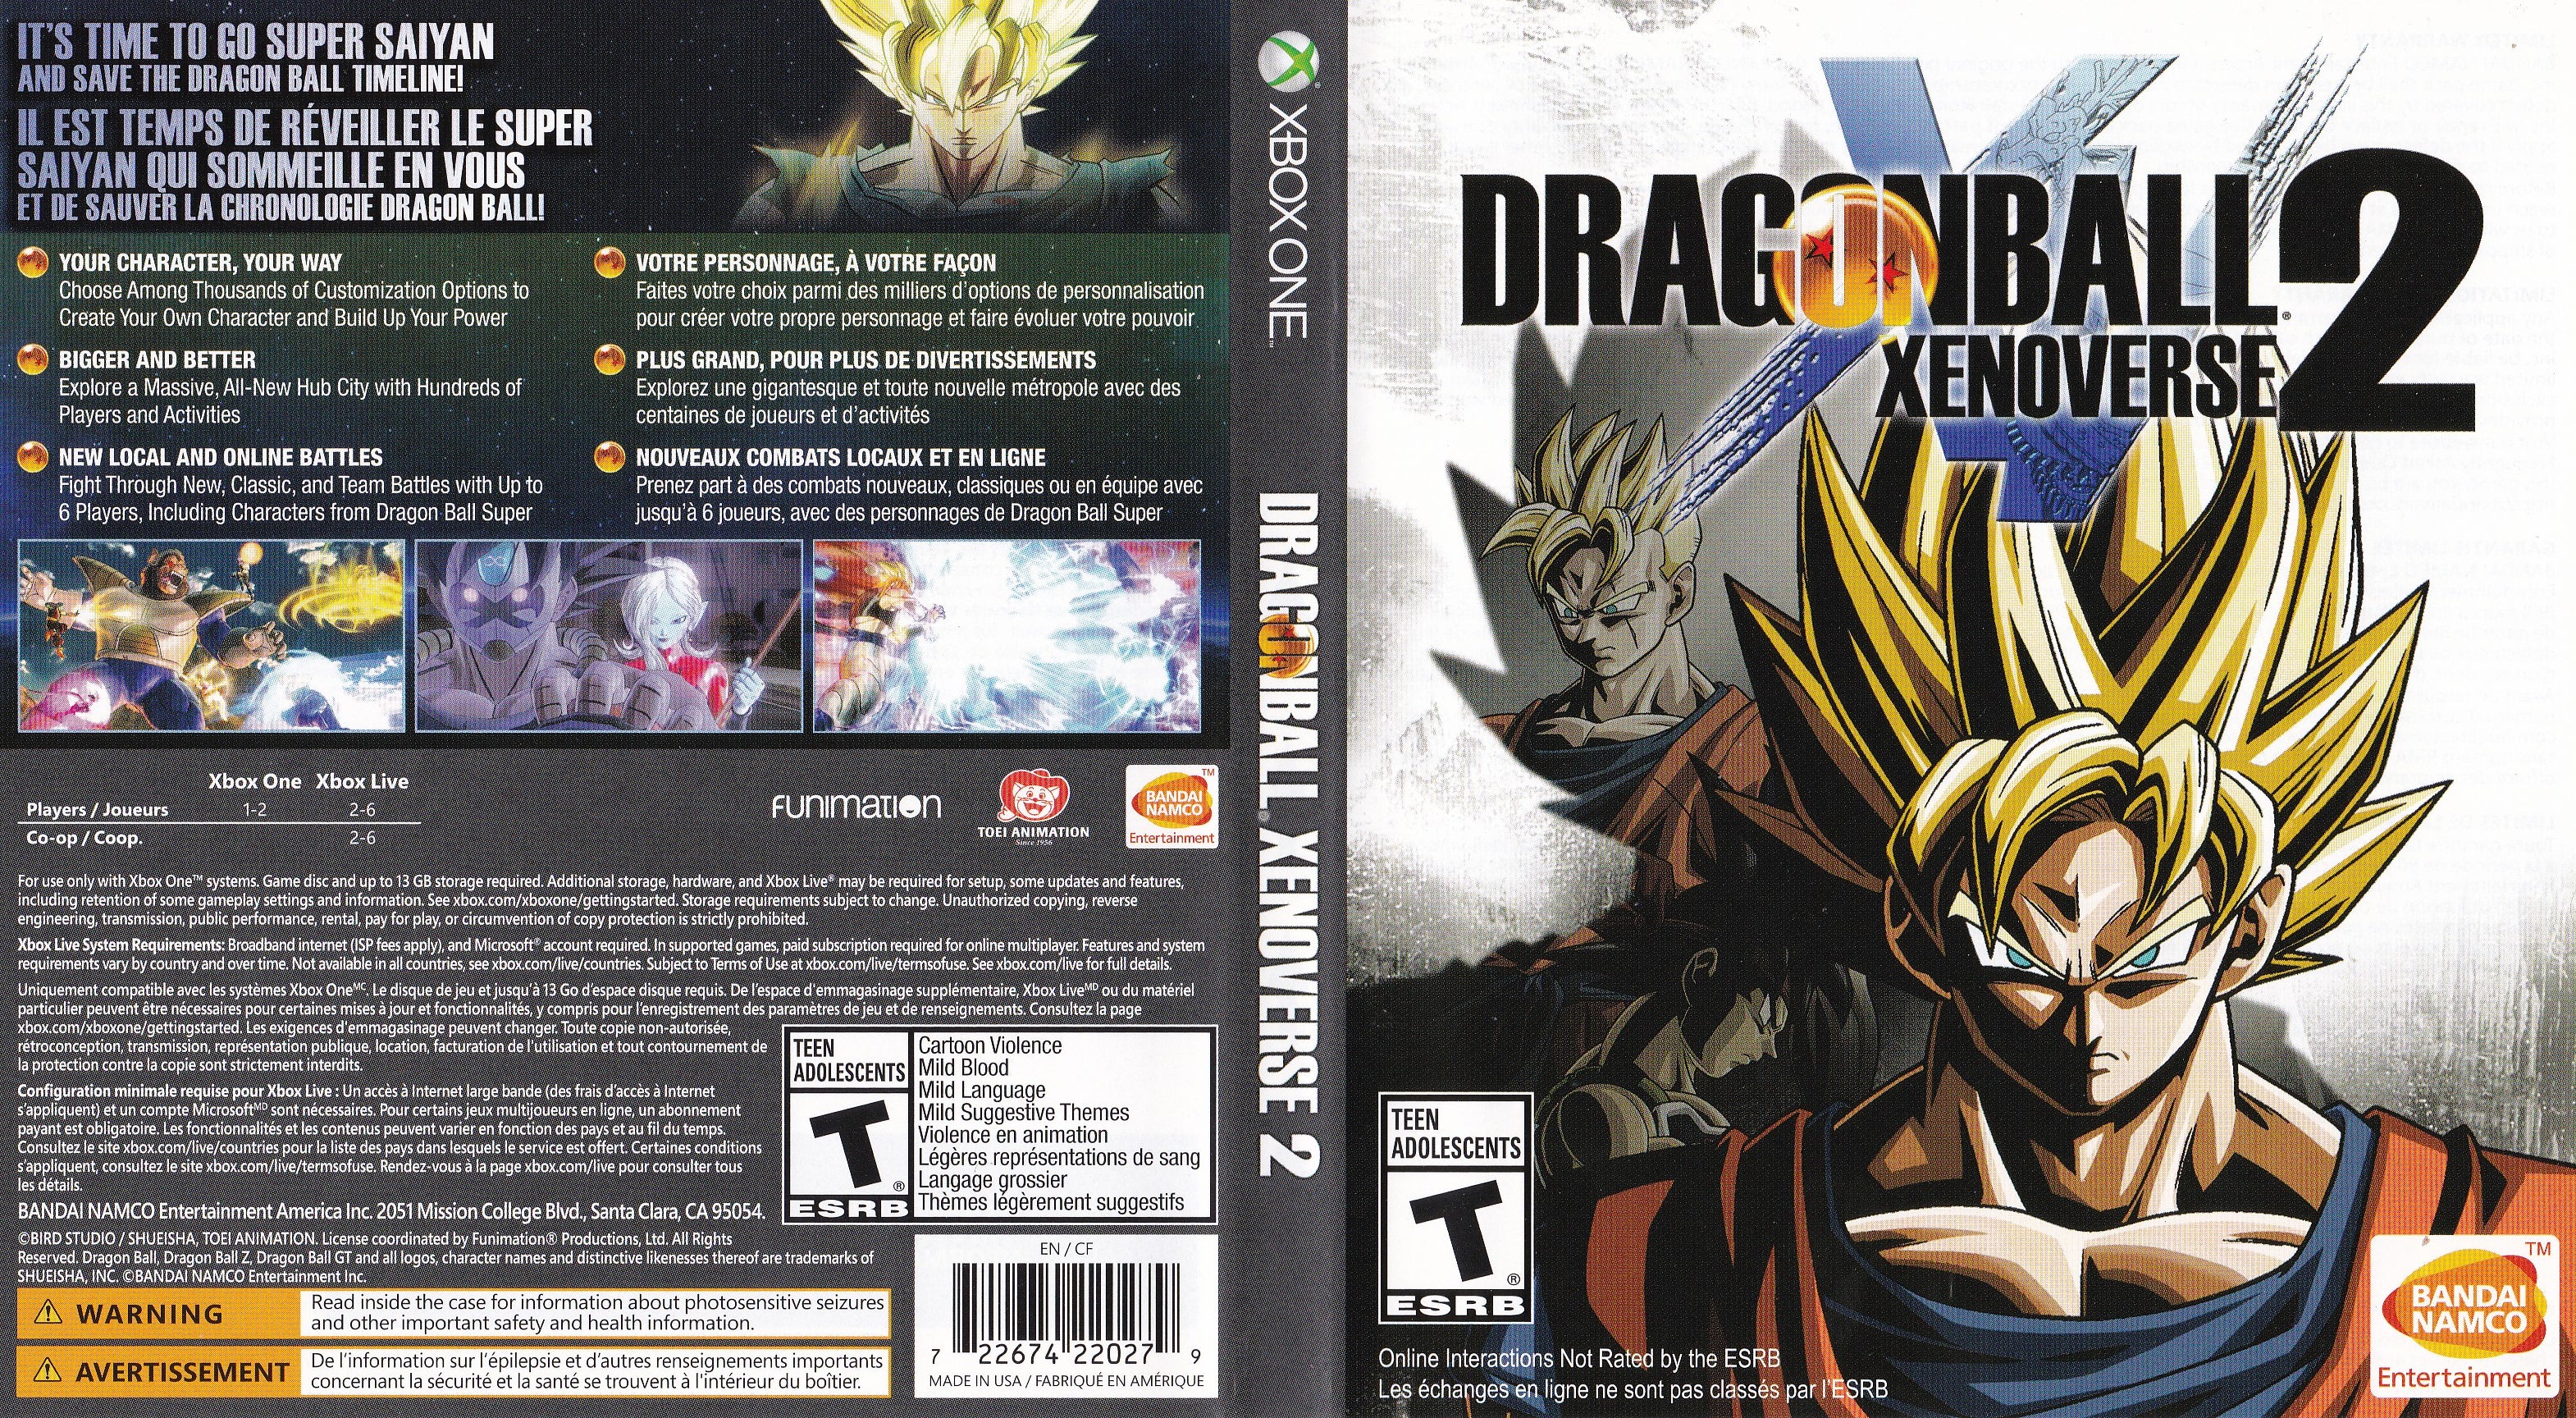  Dragon Ball Xenoverse - Xbox 360 : Bandai Namco Games